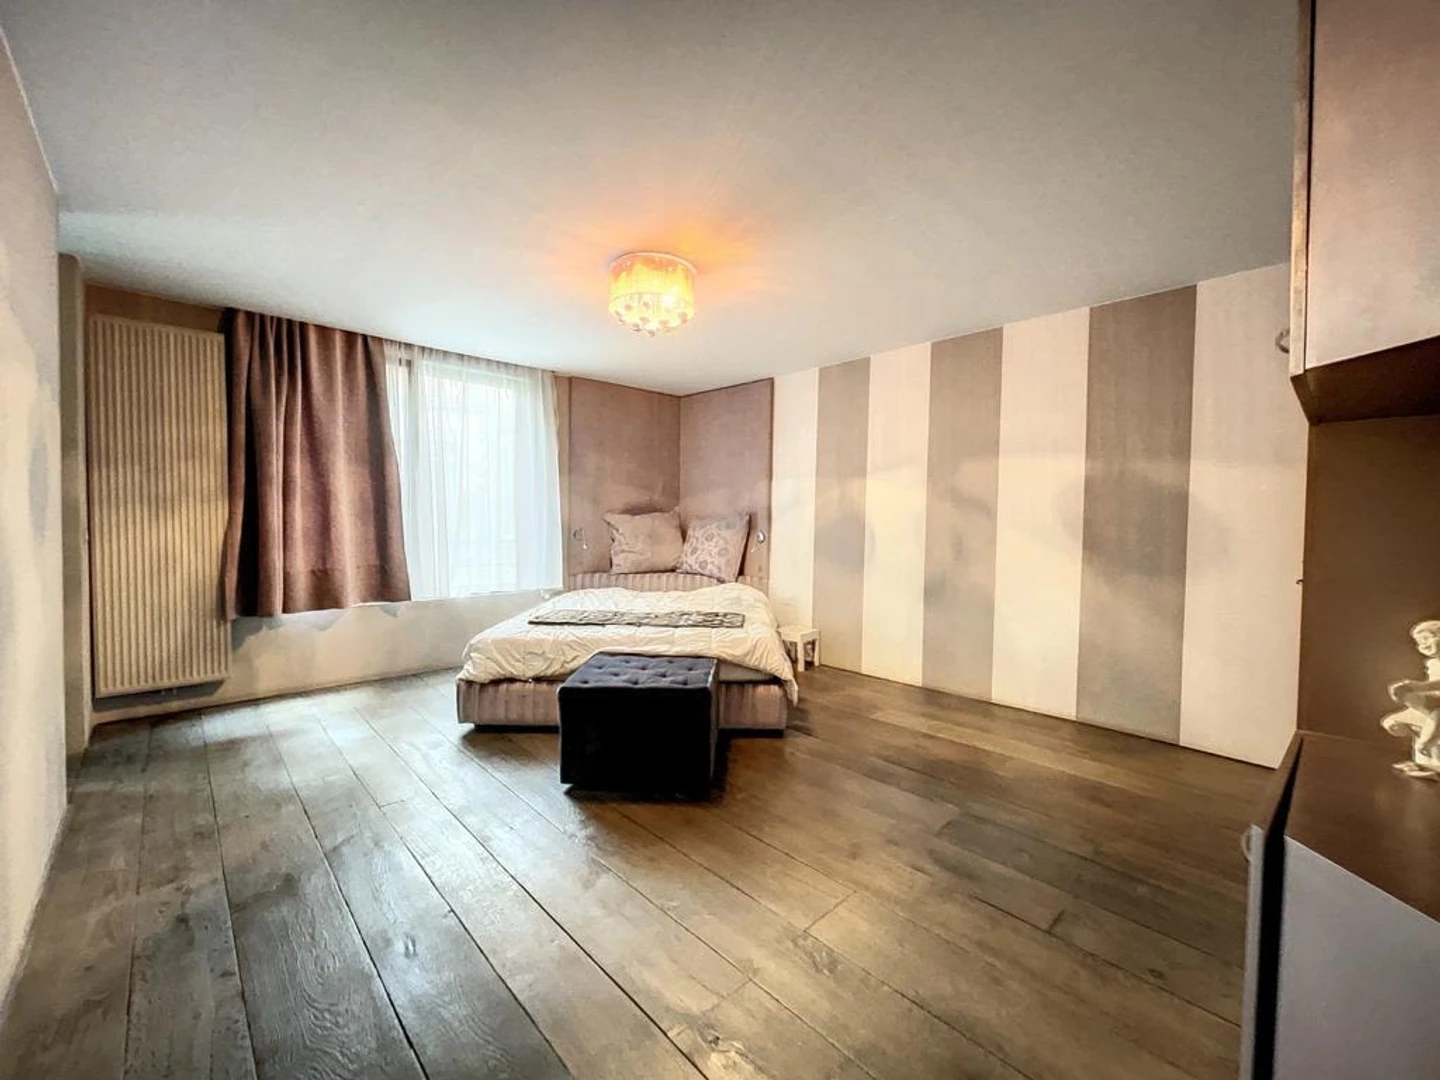 Bruxelles/brussel içinde 2 yatak odalı konaklama